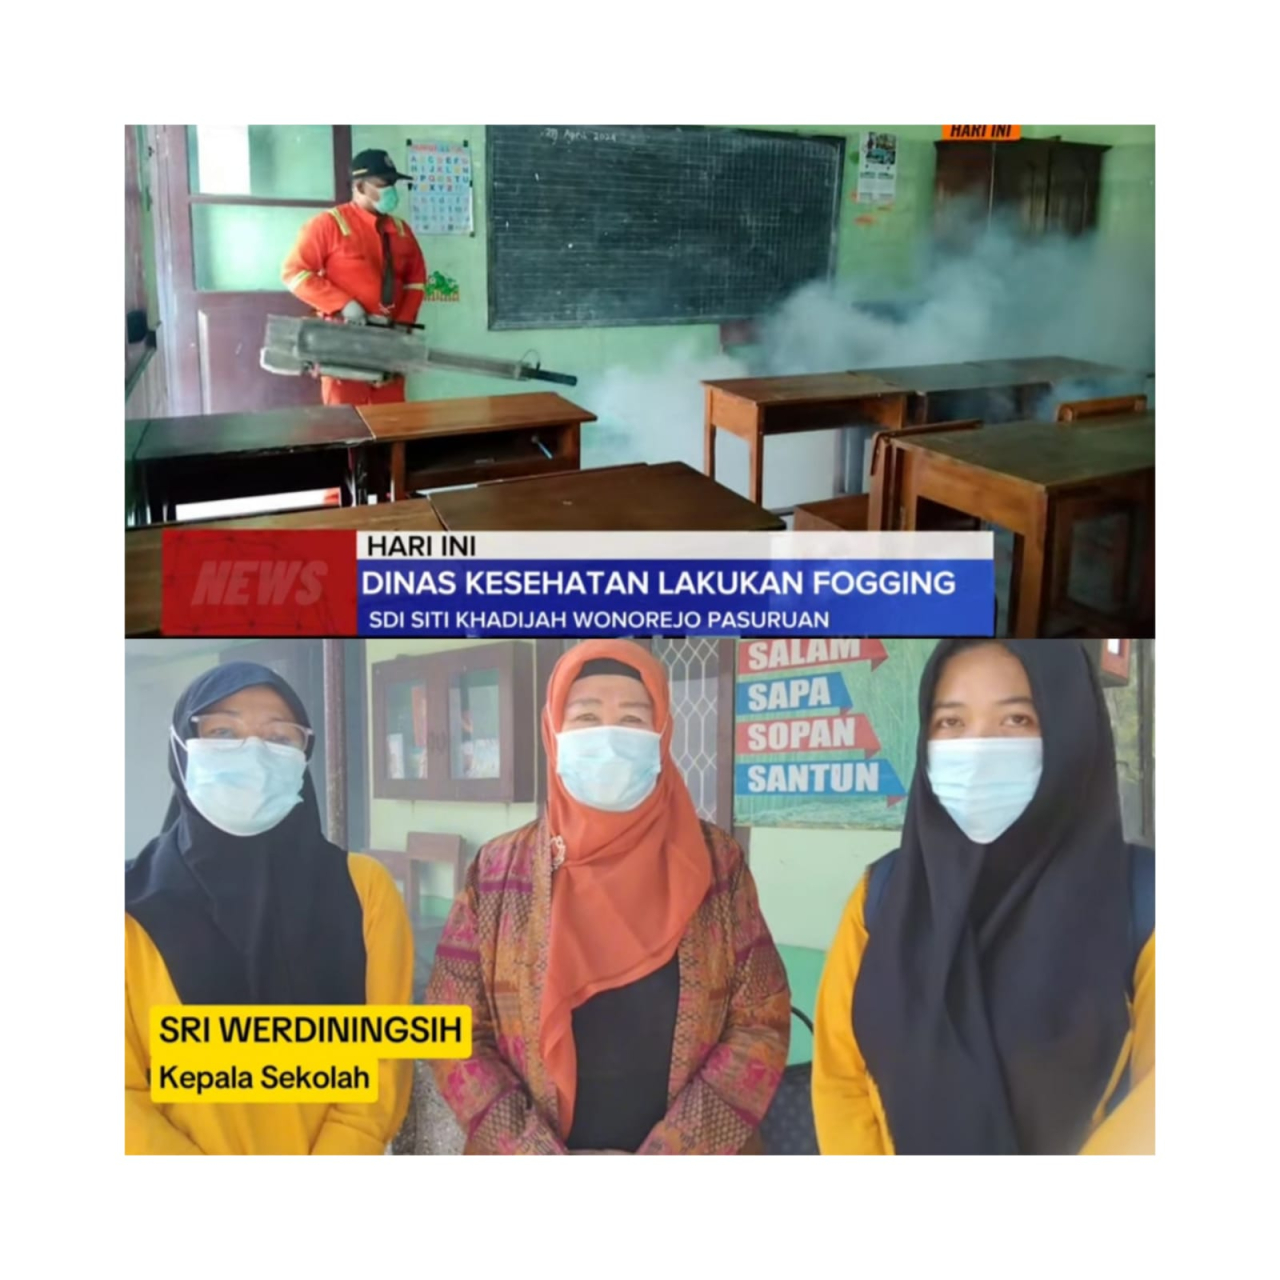 Dinas Kesehatan Kabupaten Pasuruan Lakukan Giat Fogging di Beberapa Sekolah